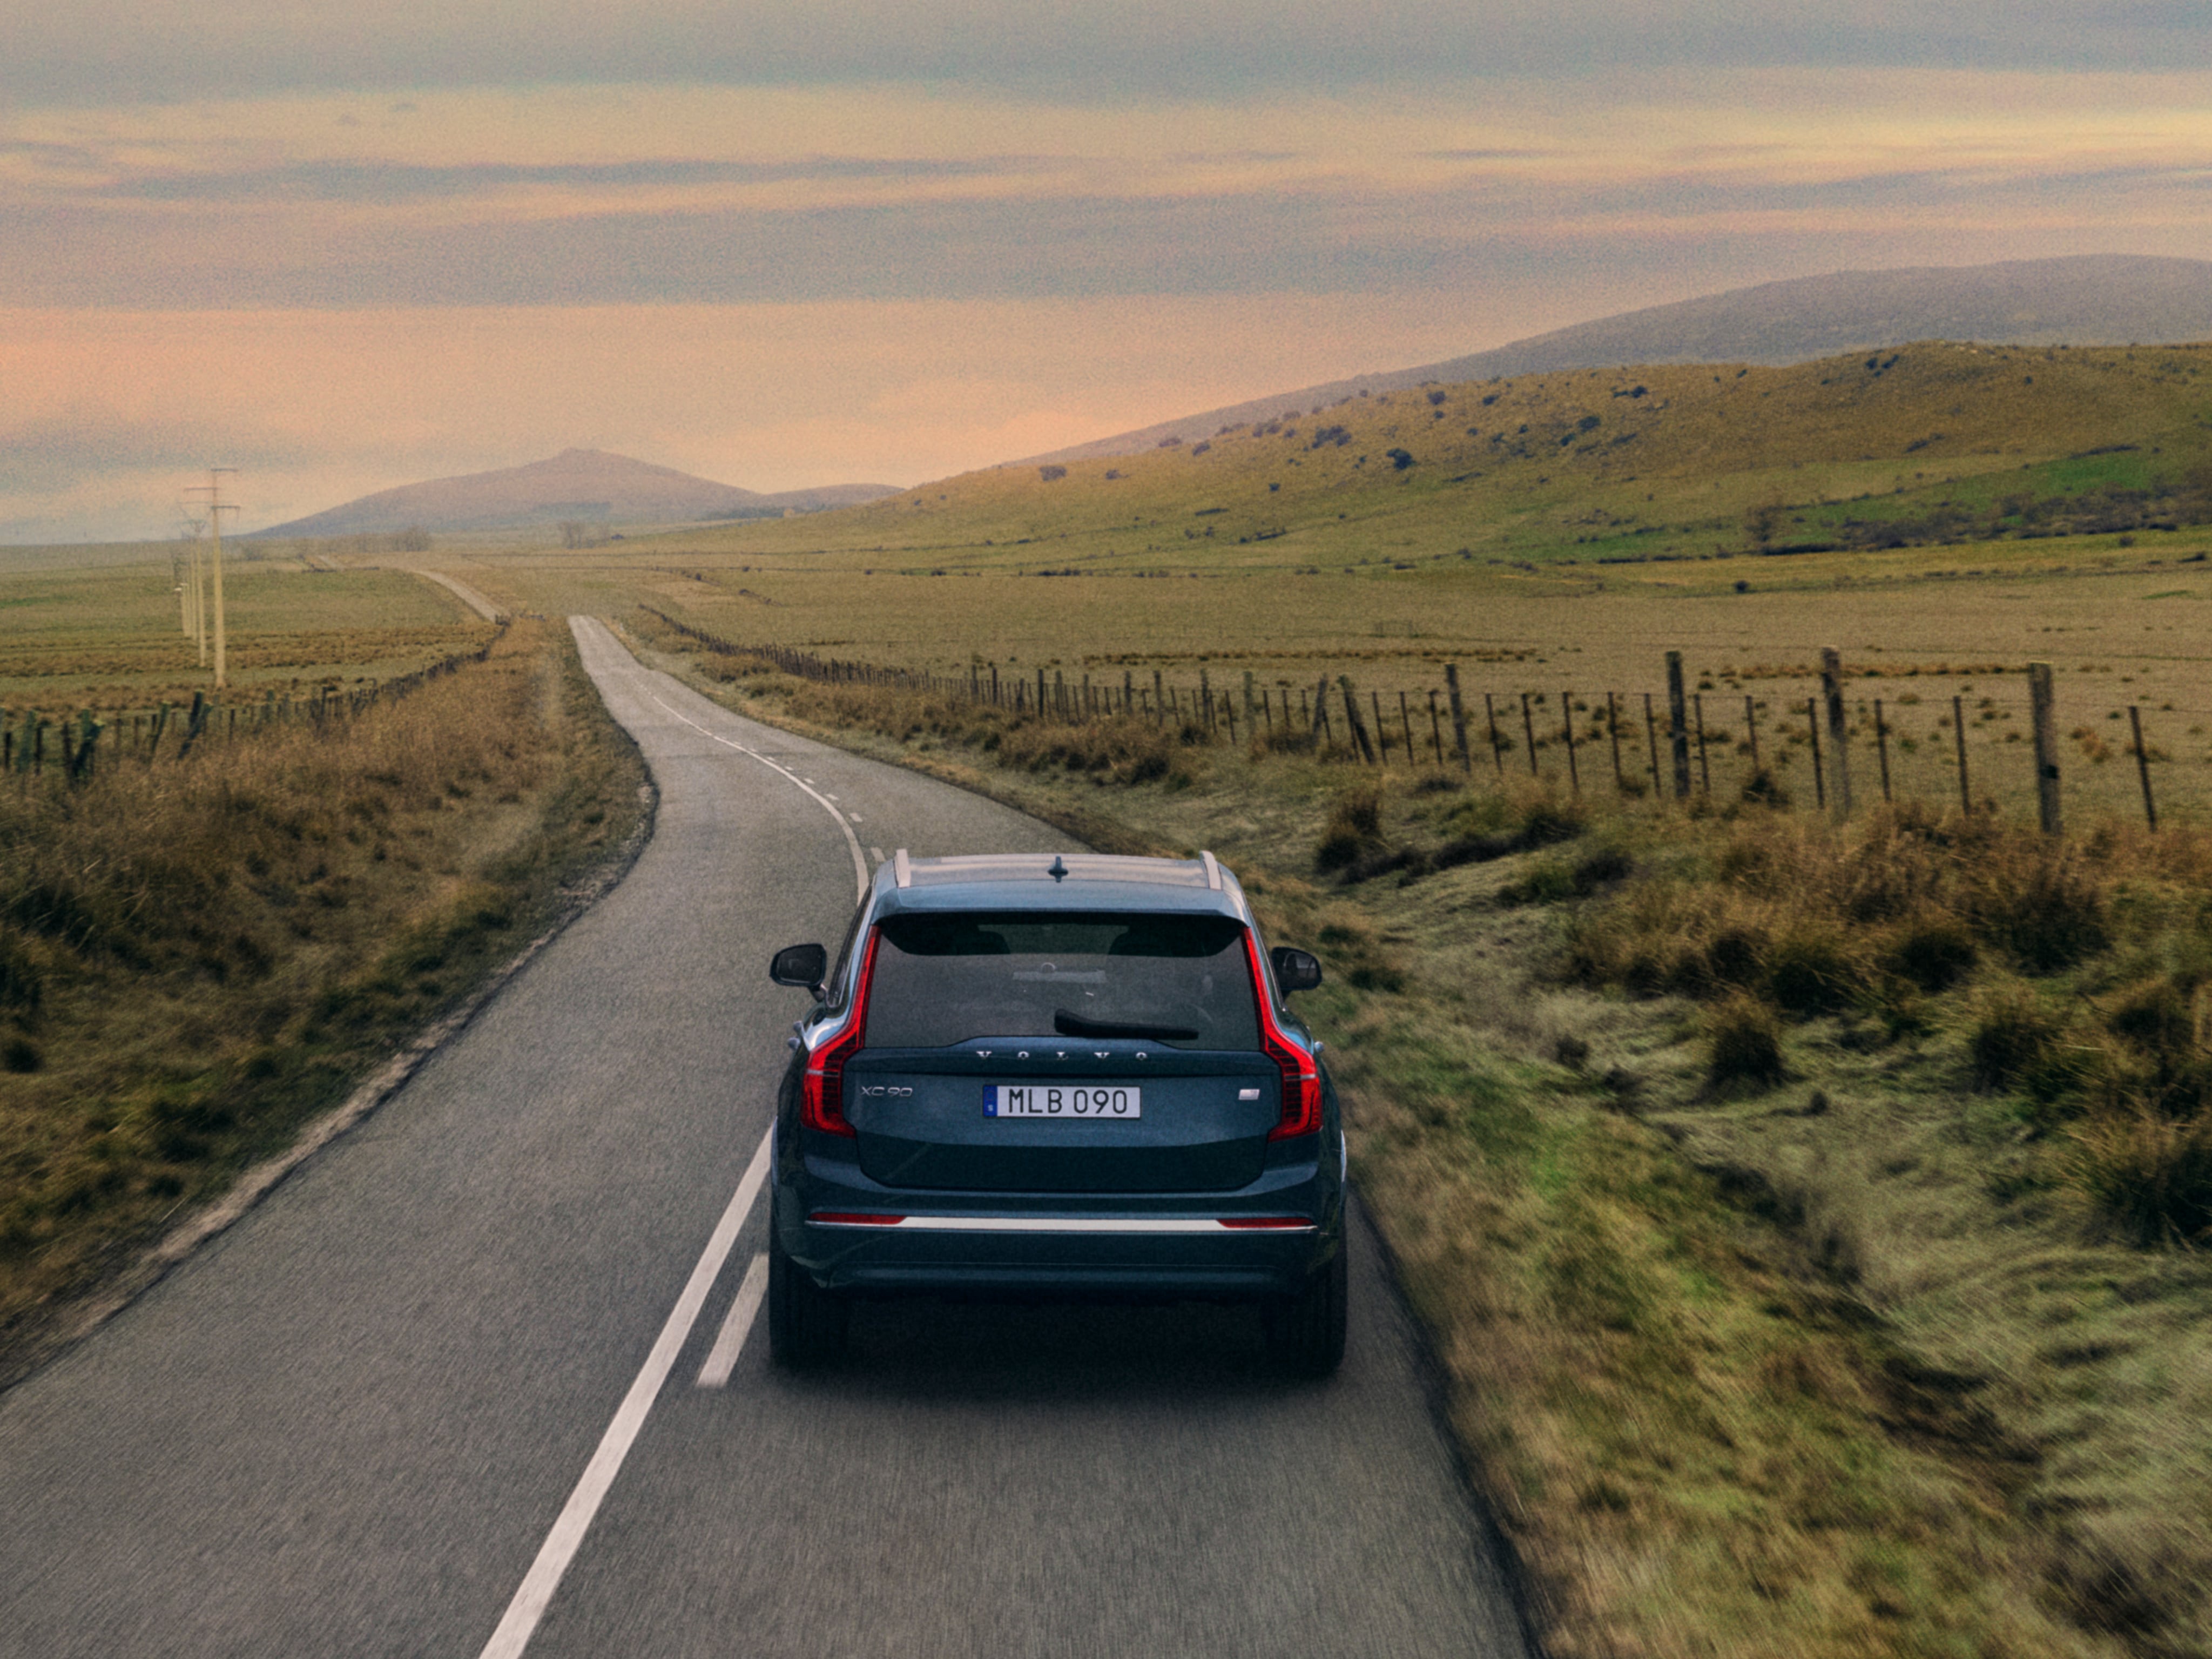 Pohled zezadu na plug-in hybridní Volvo XC90 Recharge jedoucí po silnici v krajině.